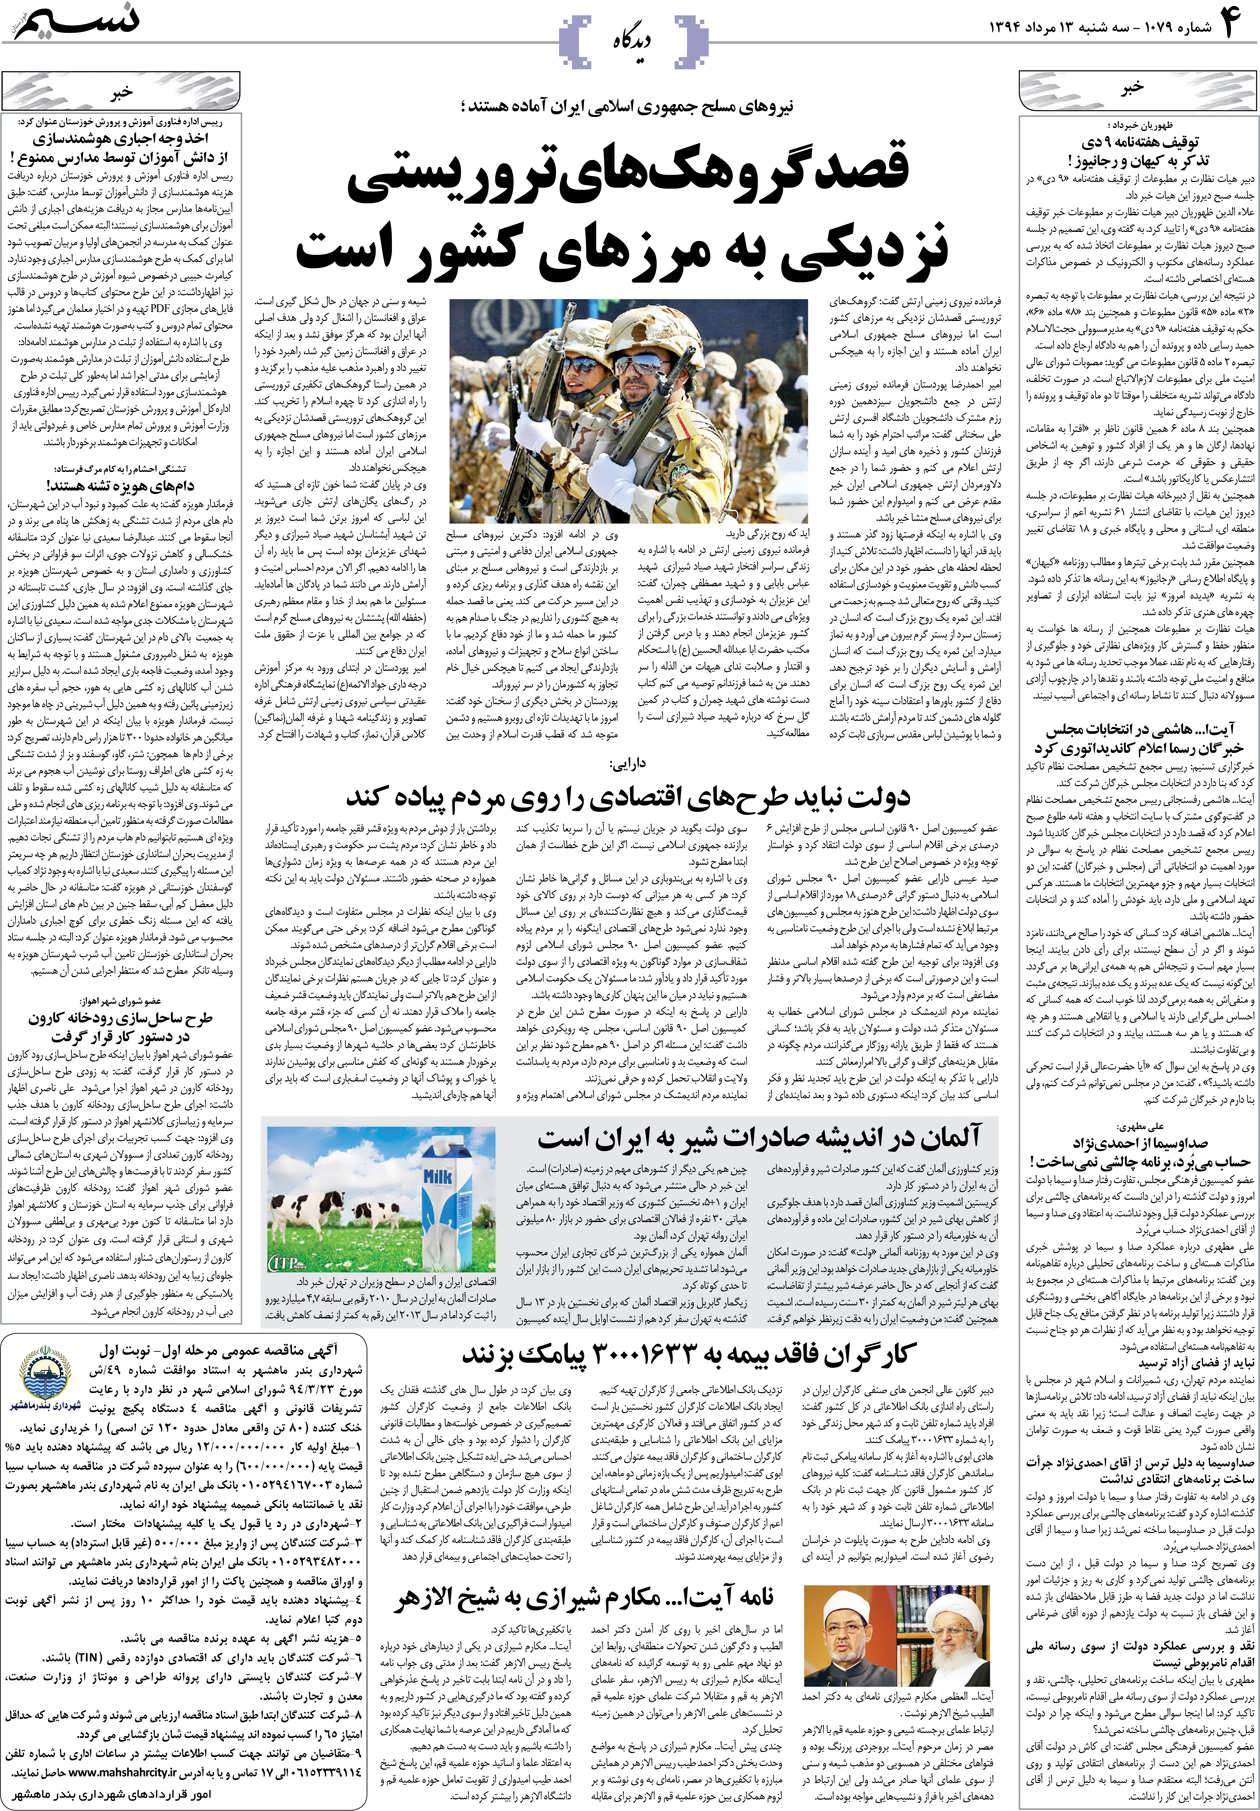 صفحه دیدگاه روزنامه نسیم شماره 1079